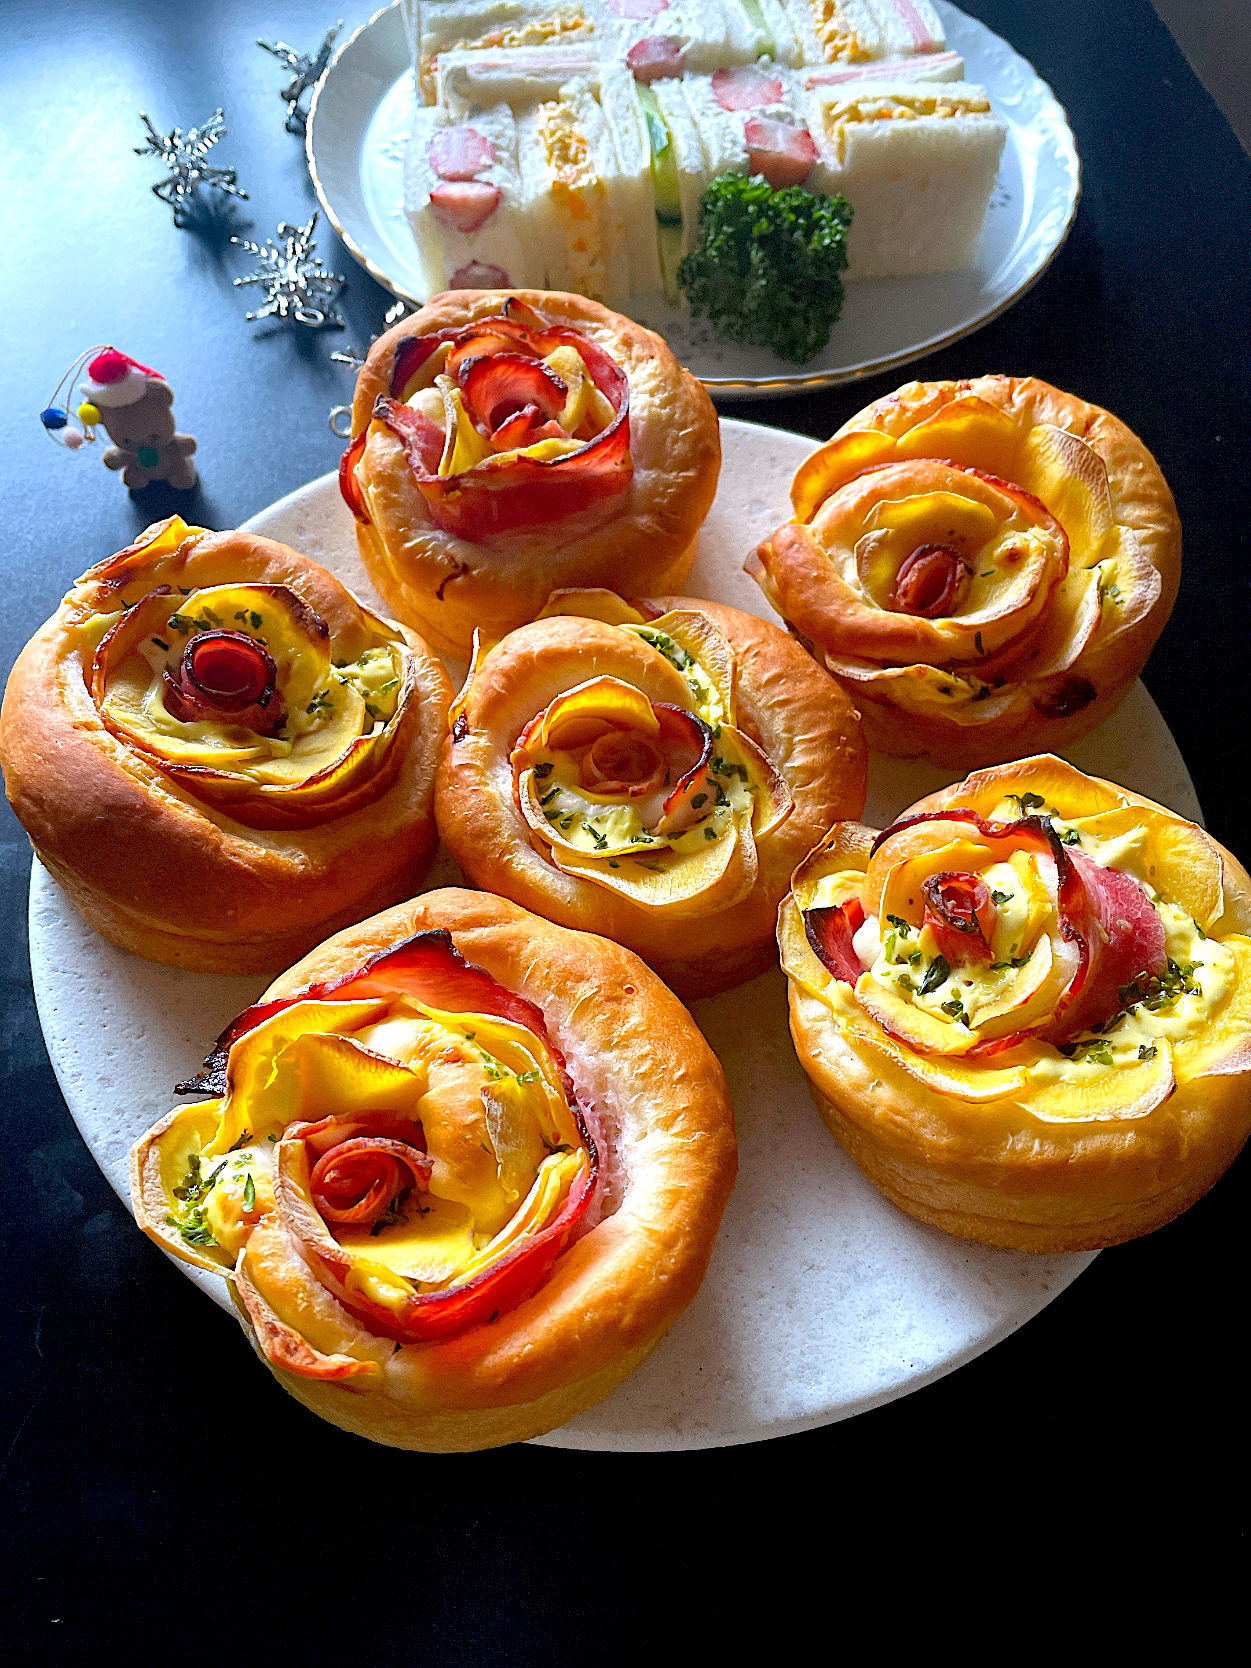 パンランチの日〜｢インカのめざめ｣のピザ風パン🍕とサンドイッチ🥪~ホームベーカリーで作る「高級専門店のパン」より